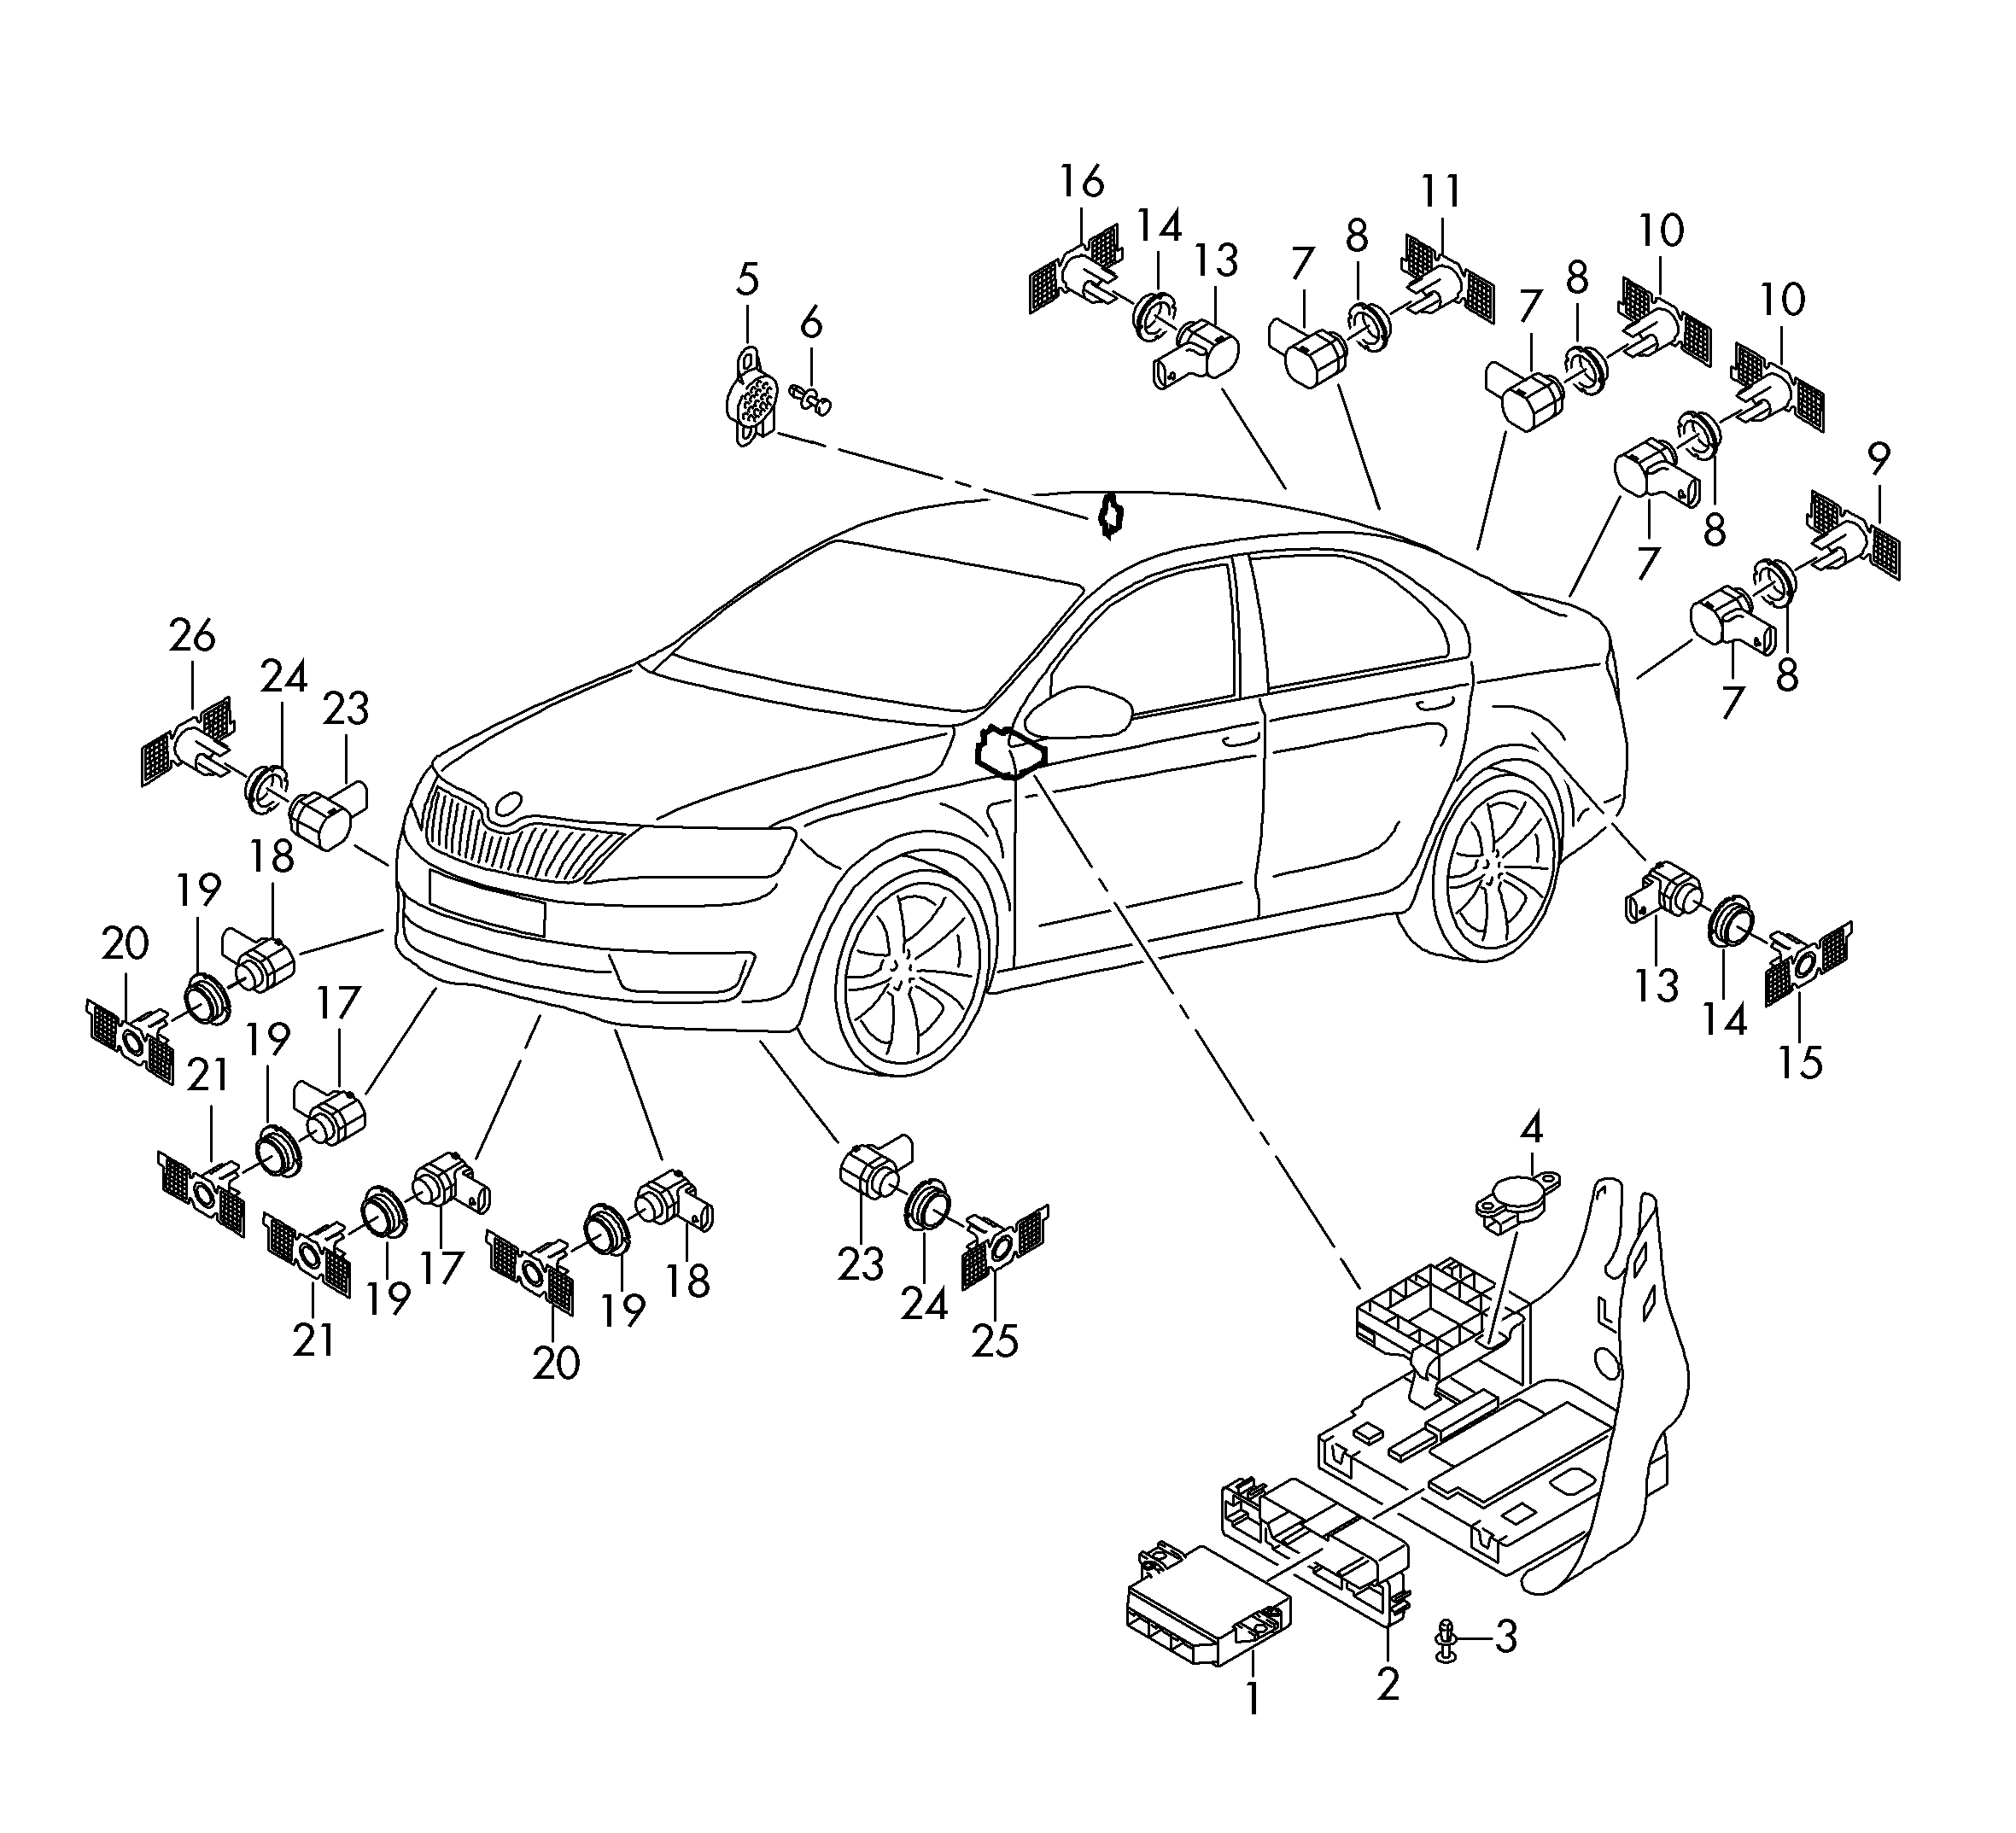 parkovaci radar; parkovaci navadeci asistent - Octavia(OCT)  